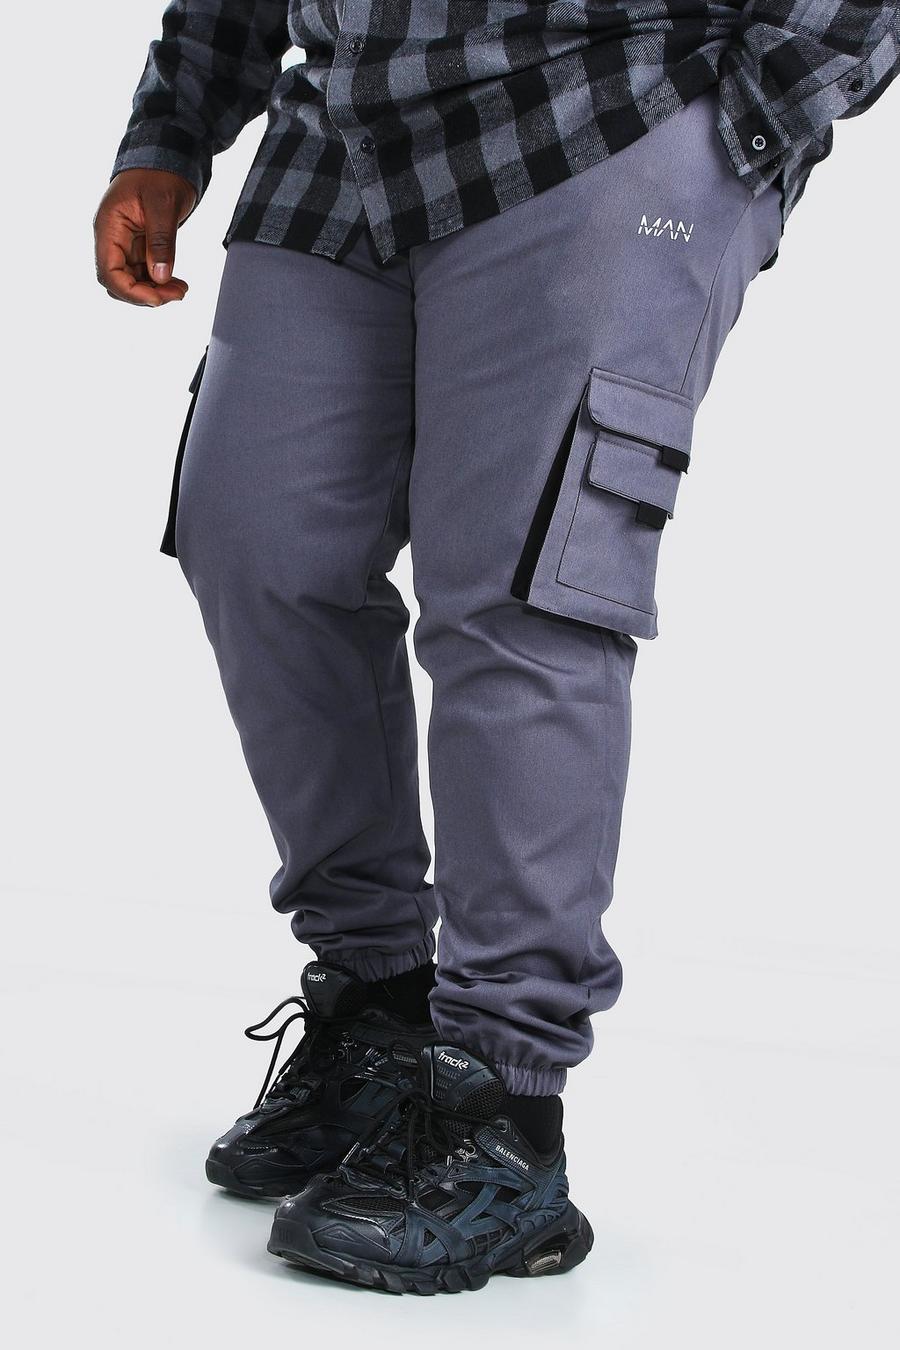 צפחה מכנסי ריצה ארוגים בסגנון דגמ"ח עם לשונית וכיתוב MAN למידות גדולות image number 1